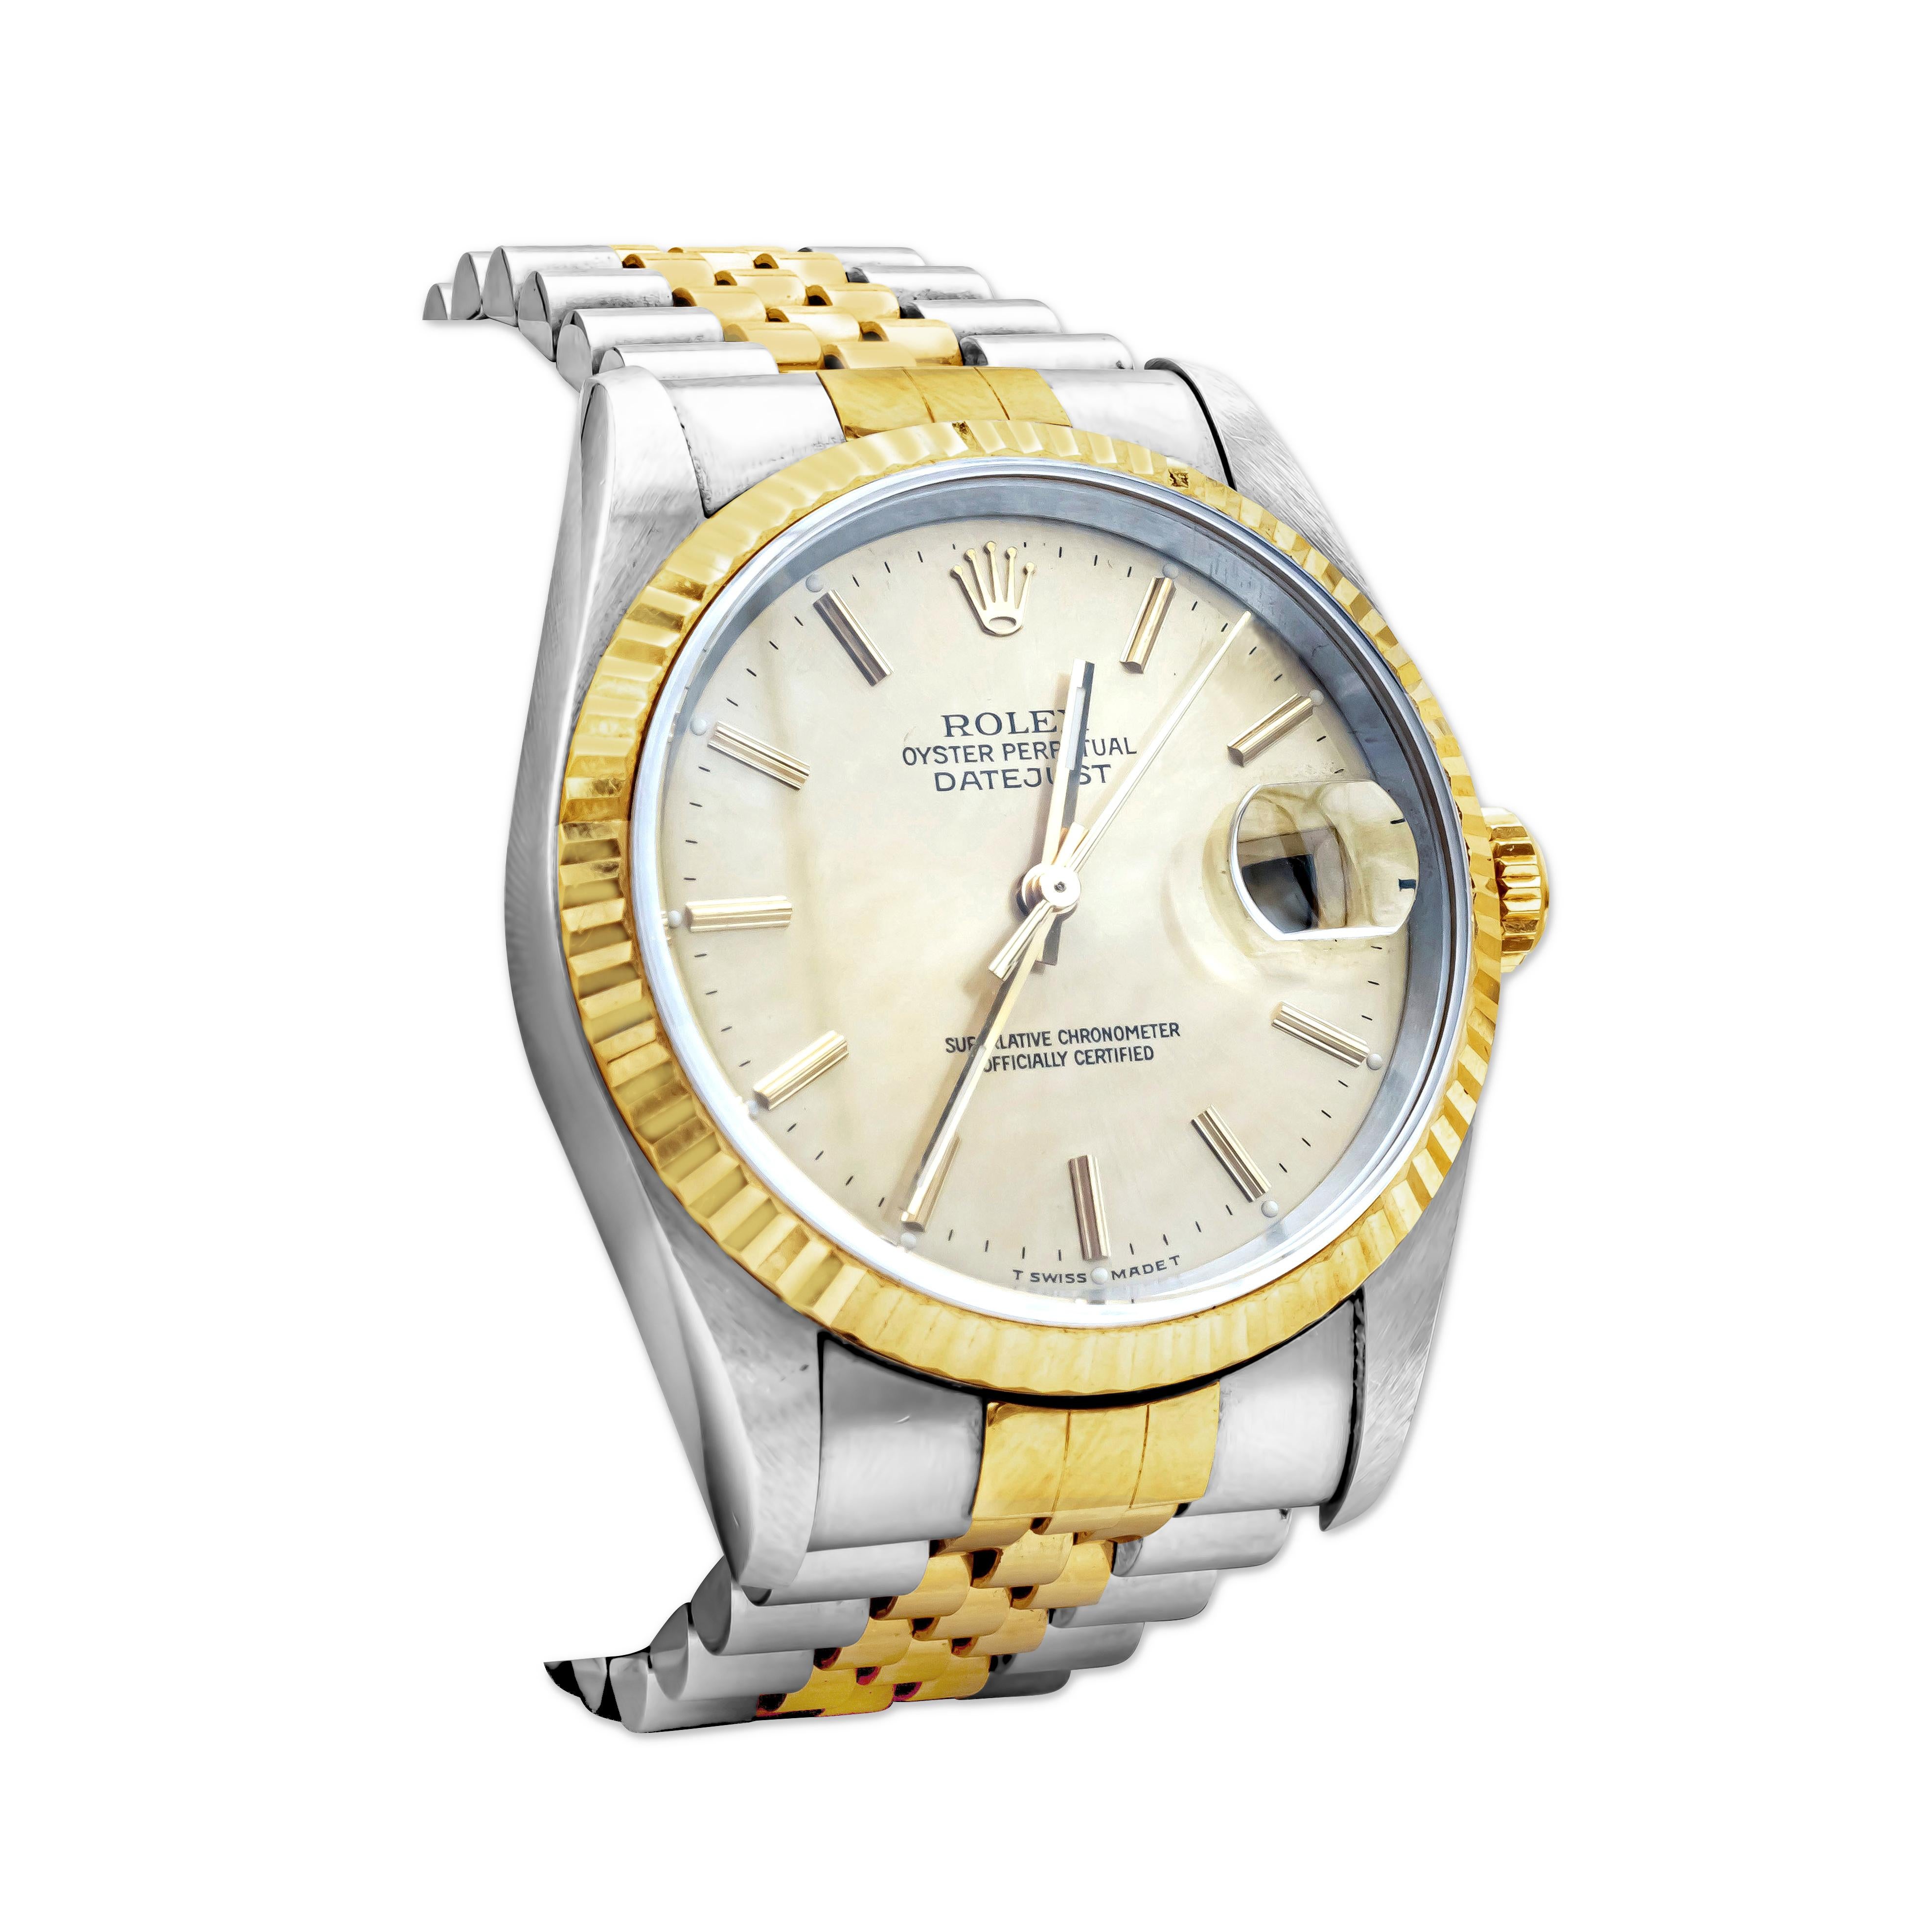 Pre-Owned Rolex Datejust (16233) selbst - Wicklung automatische Uhr, verfügt über ein 36mm Edelstahlgehäuse mit einem 18K Gelbgold kannelierte Lünette, Rolex Jubiläum 18K Gelbgold und Edelstahlarmband mit Faltschließe.